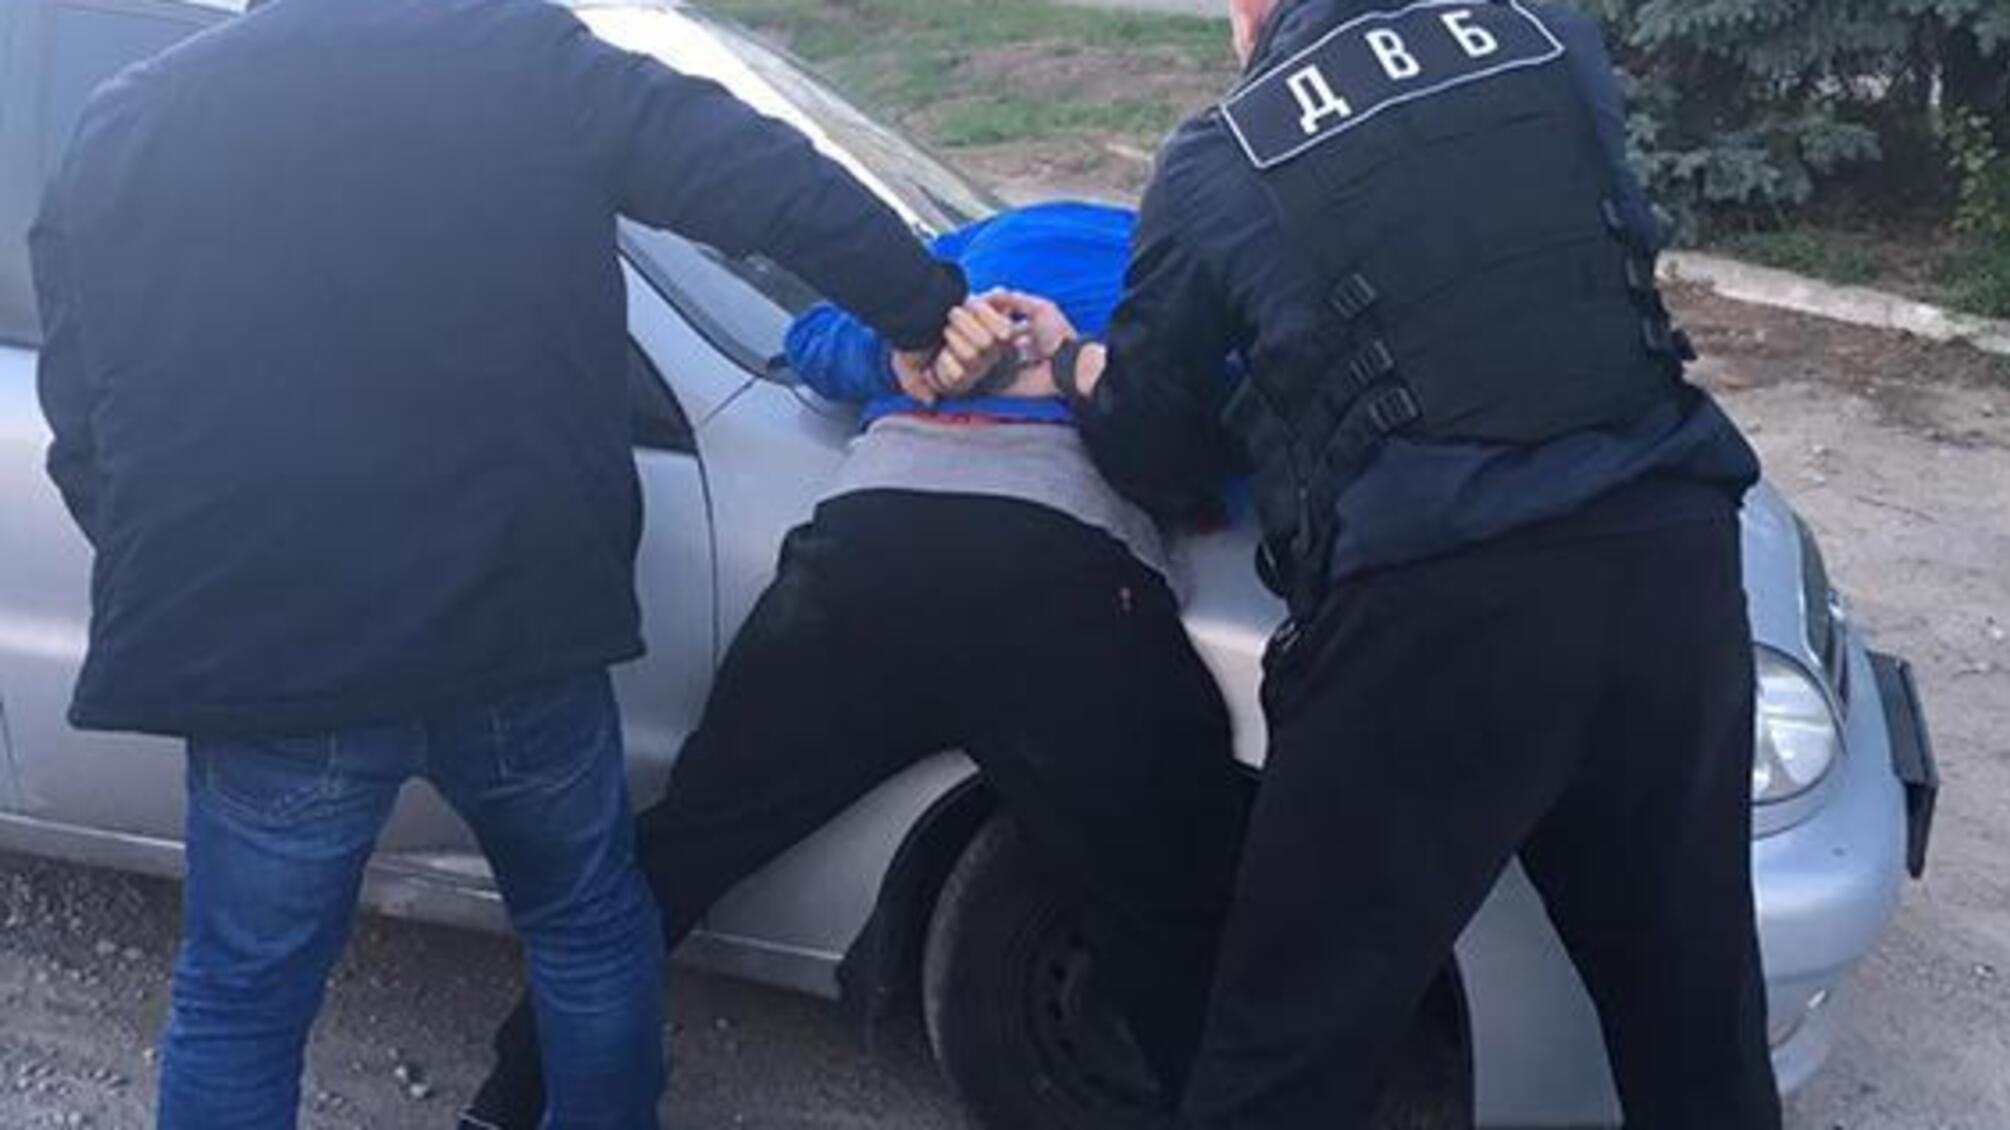 У Запорізькій області на збуті наркотиків затримано поліцейського